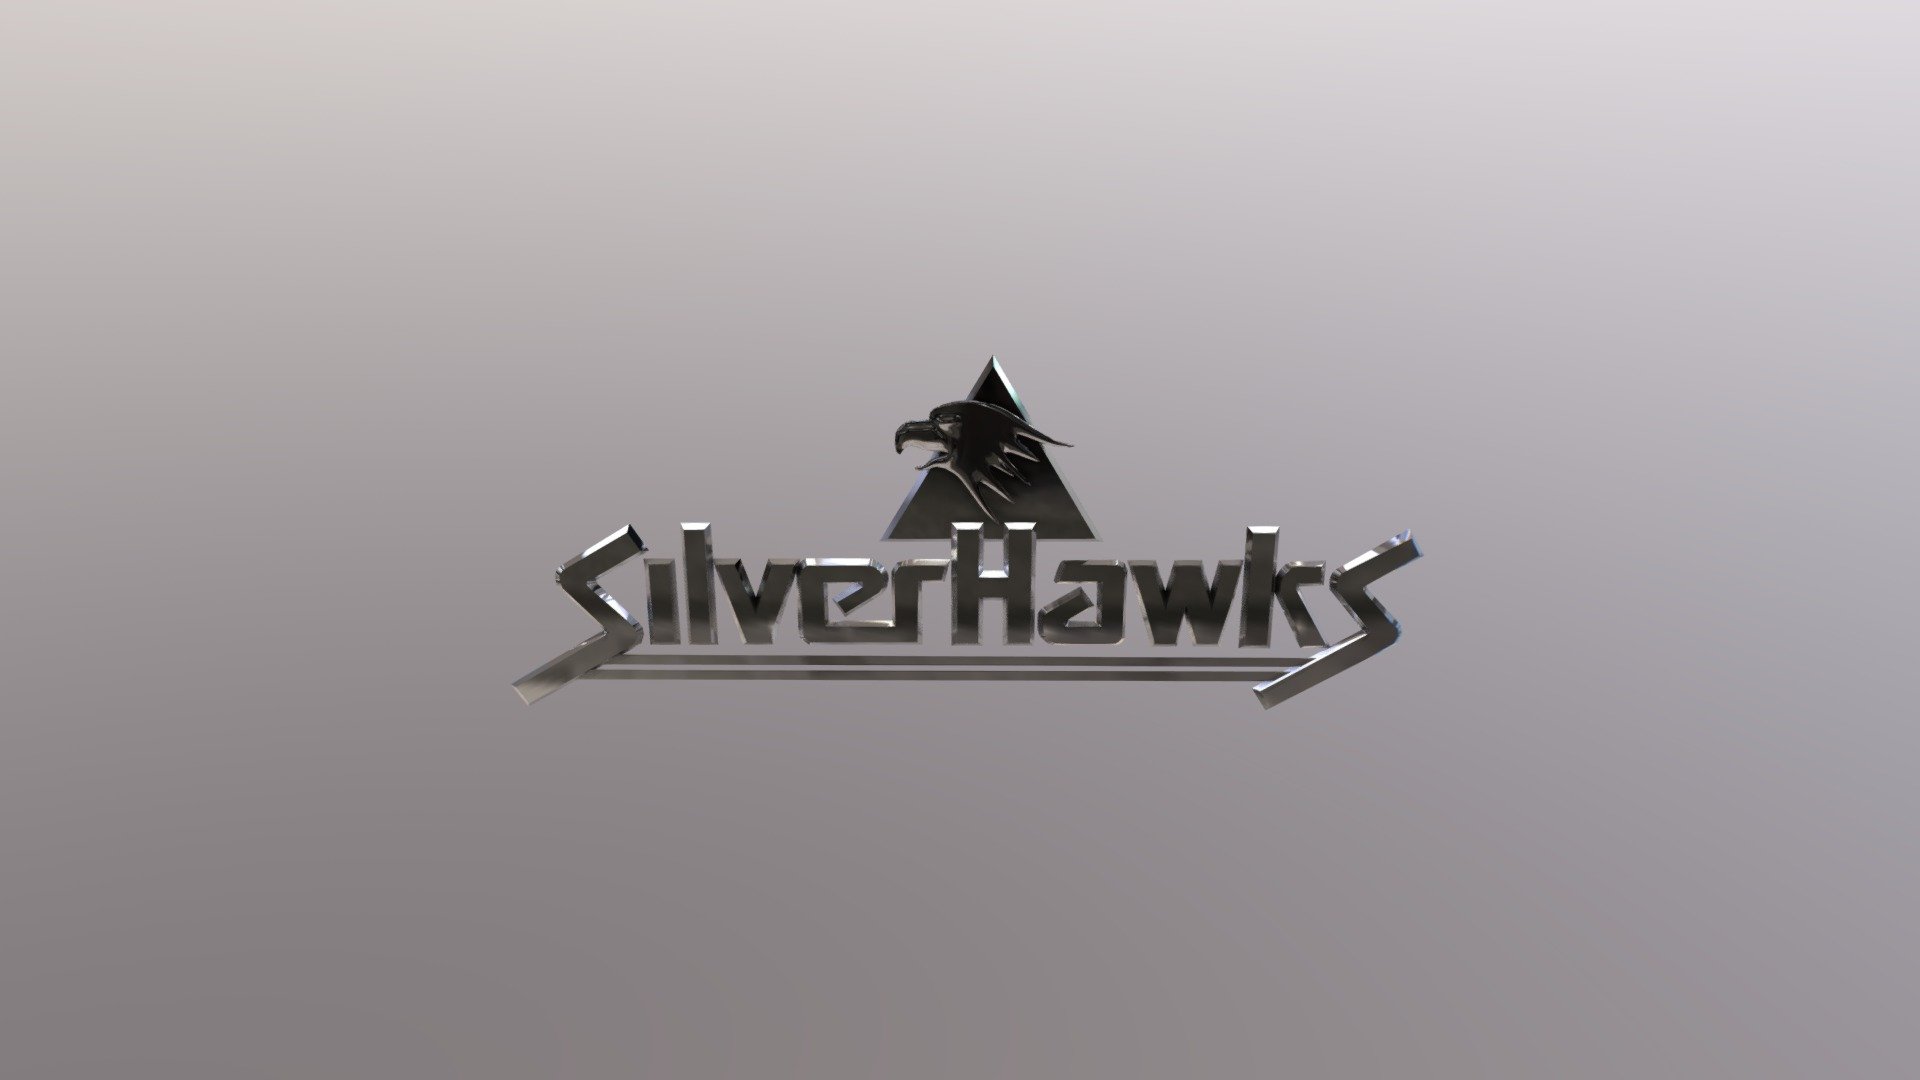 silverhawks wallpaper